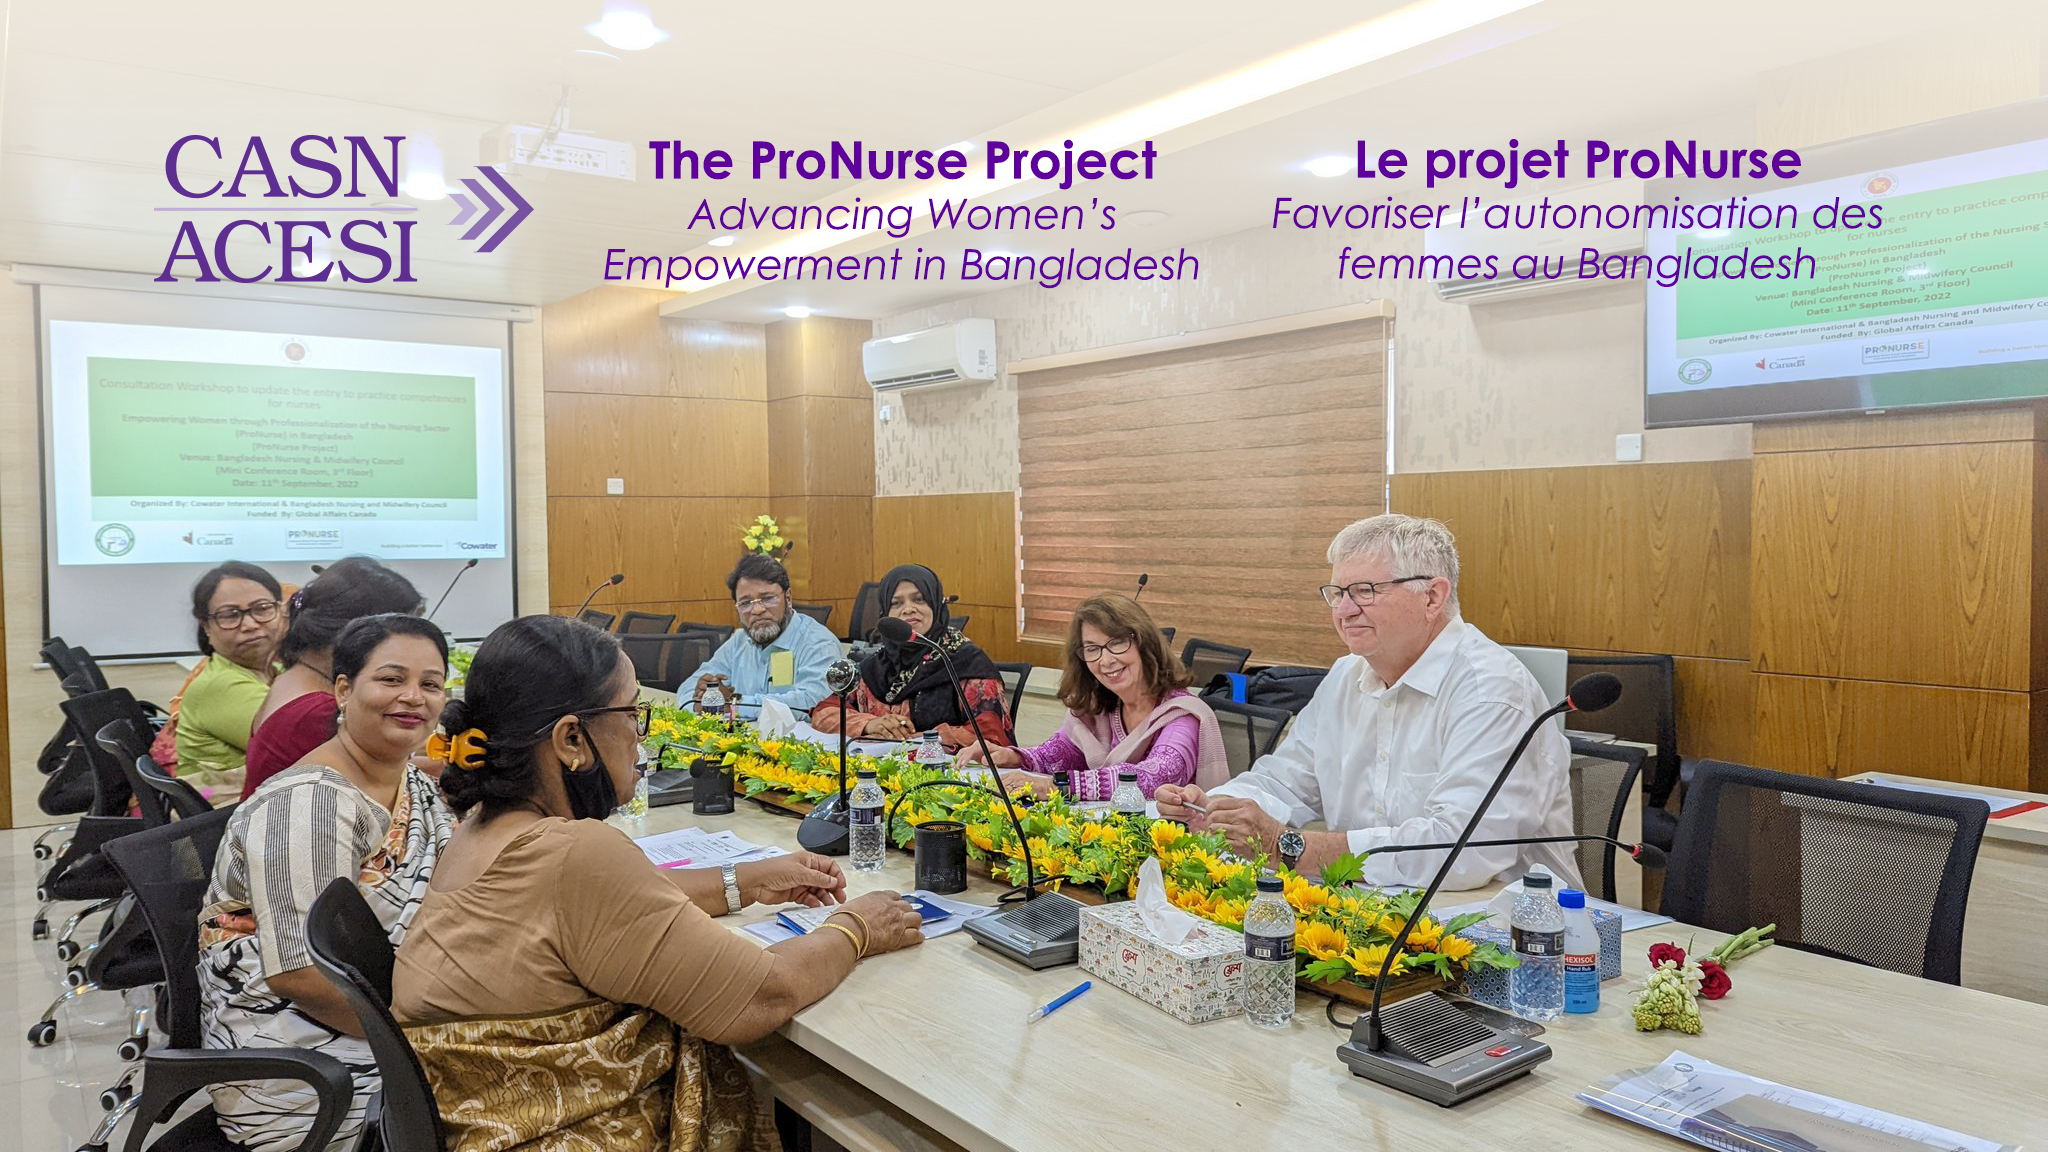 Le projet ProNurse – Favoriser l’autonomisation des femmes au Bangladesh